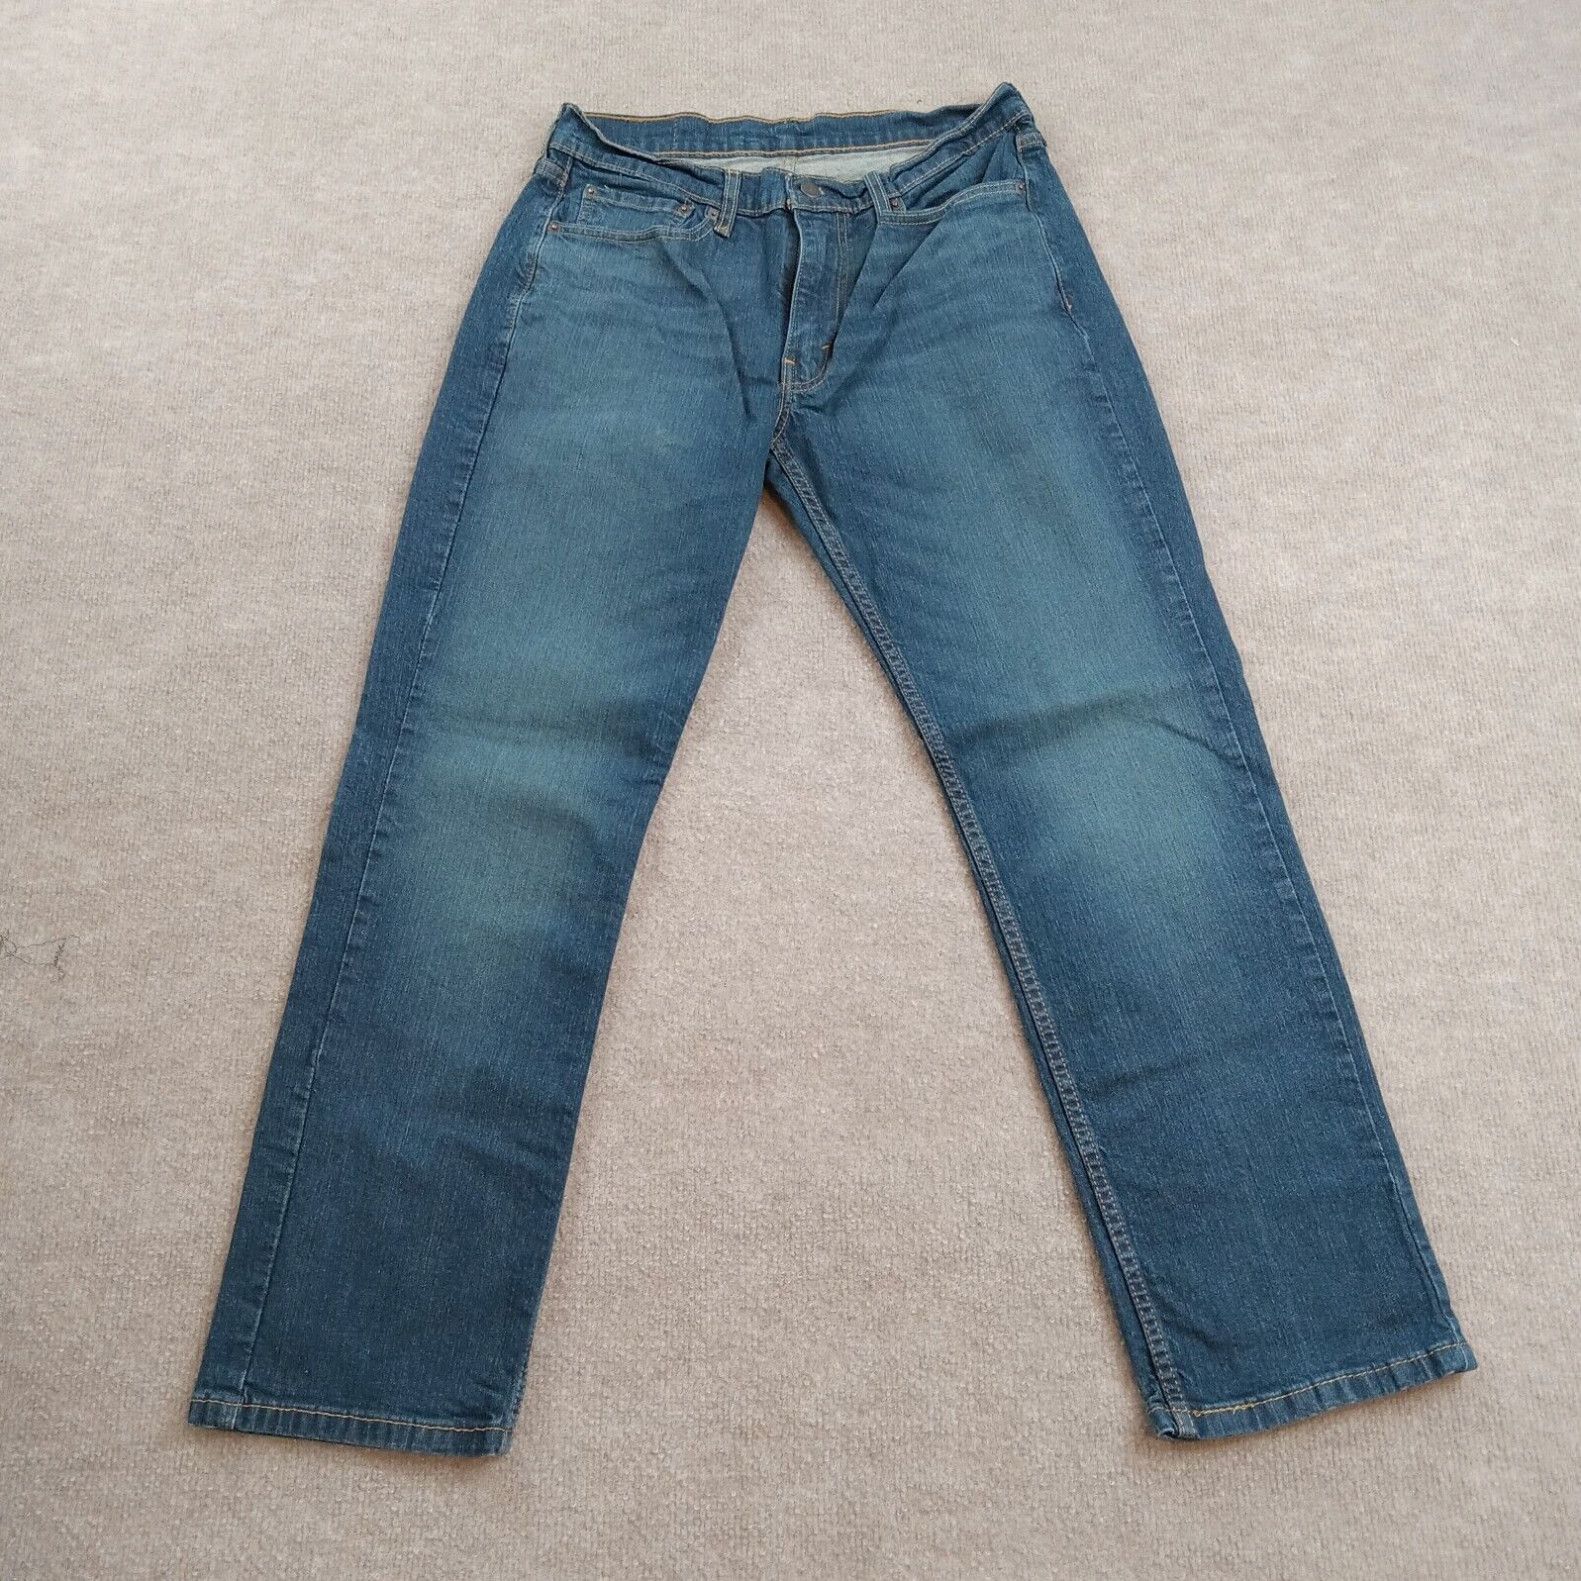 Levi's Levis 514 Jeans Mens 33x30 (33x28 Actual) Blue Denim Straight Leg Casual Stretch Size US 33 - 1 Preview